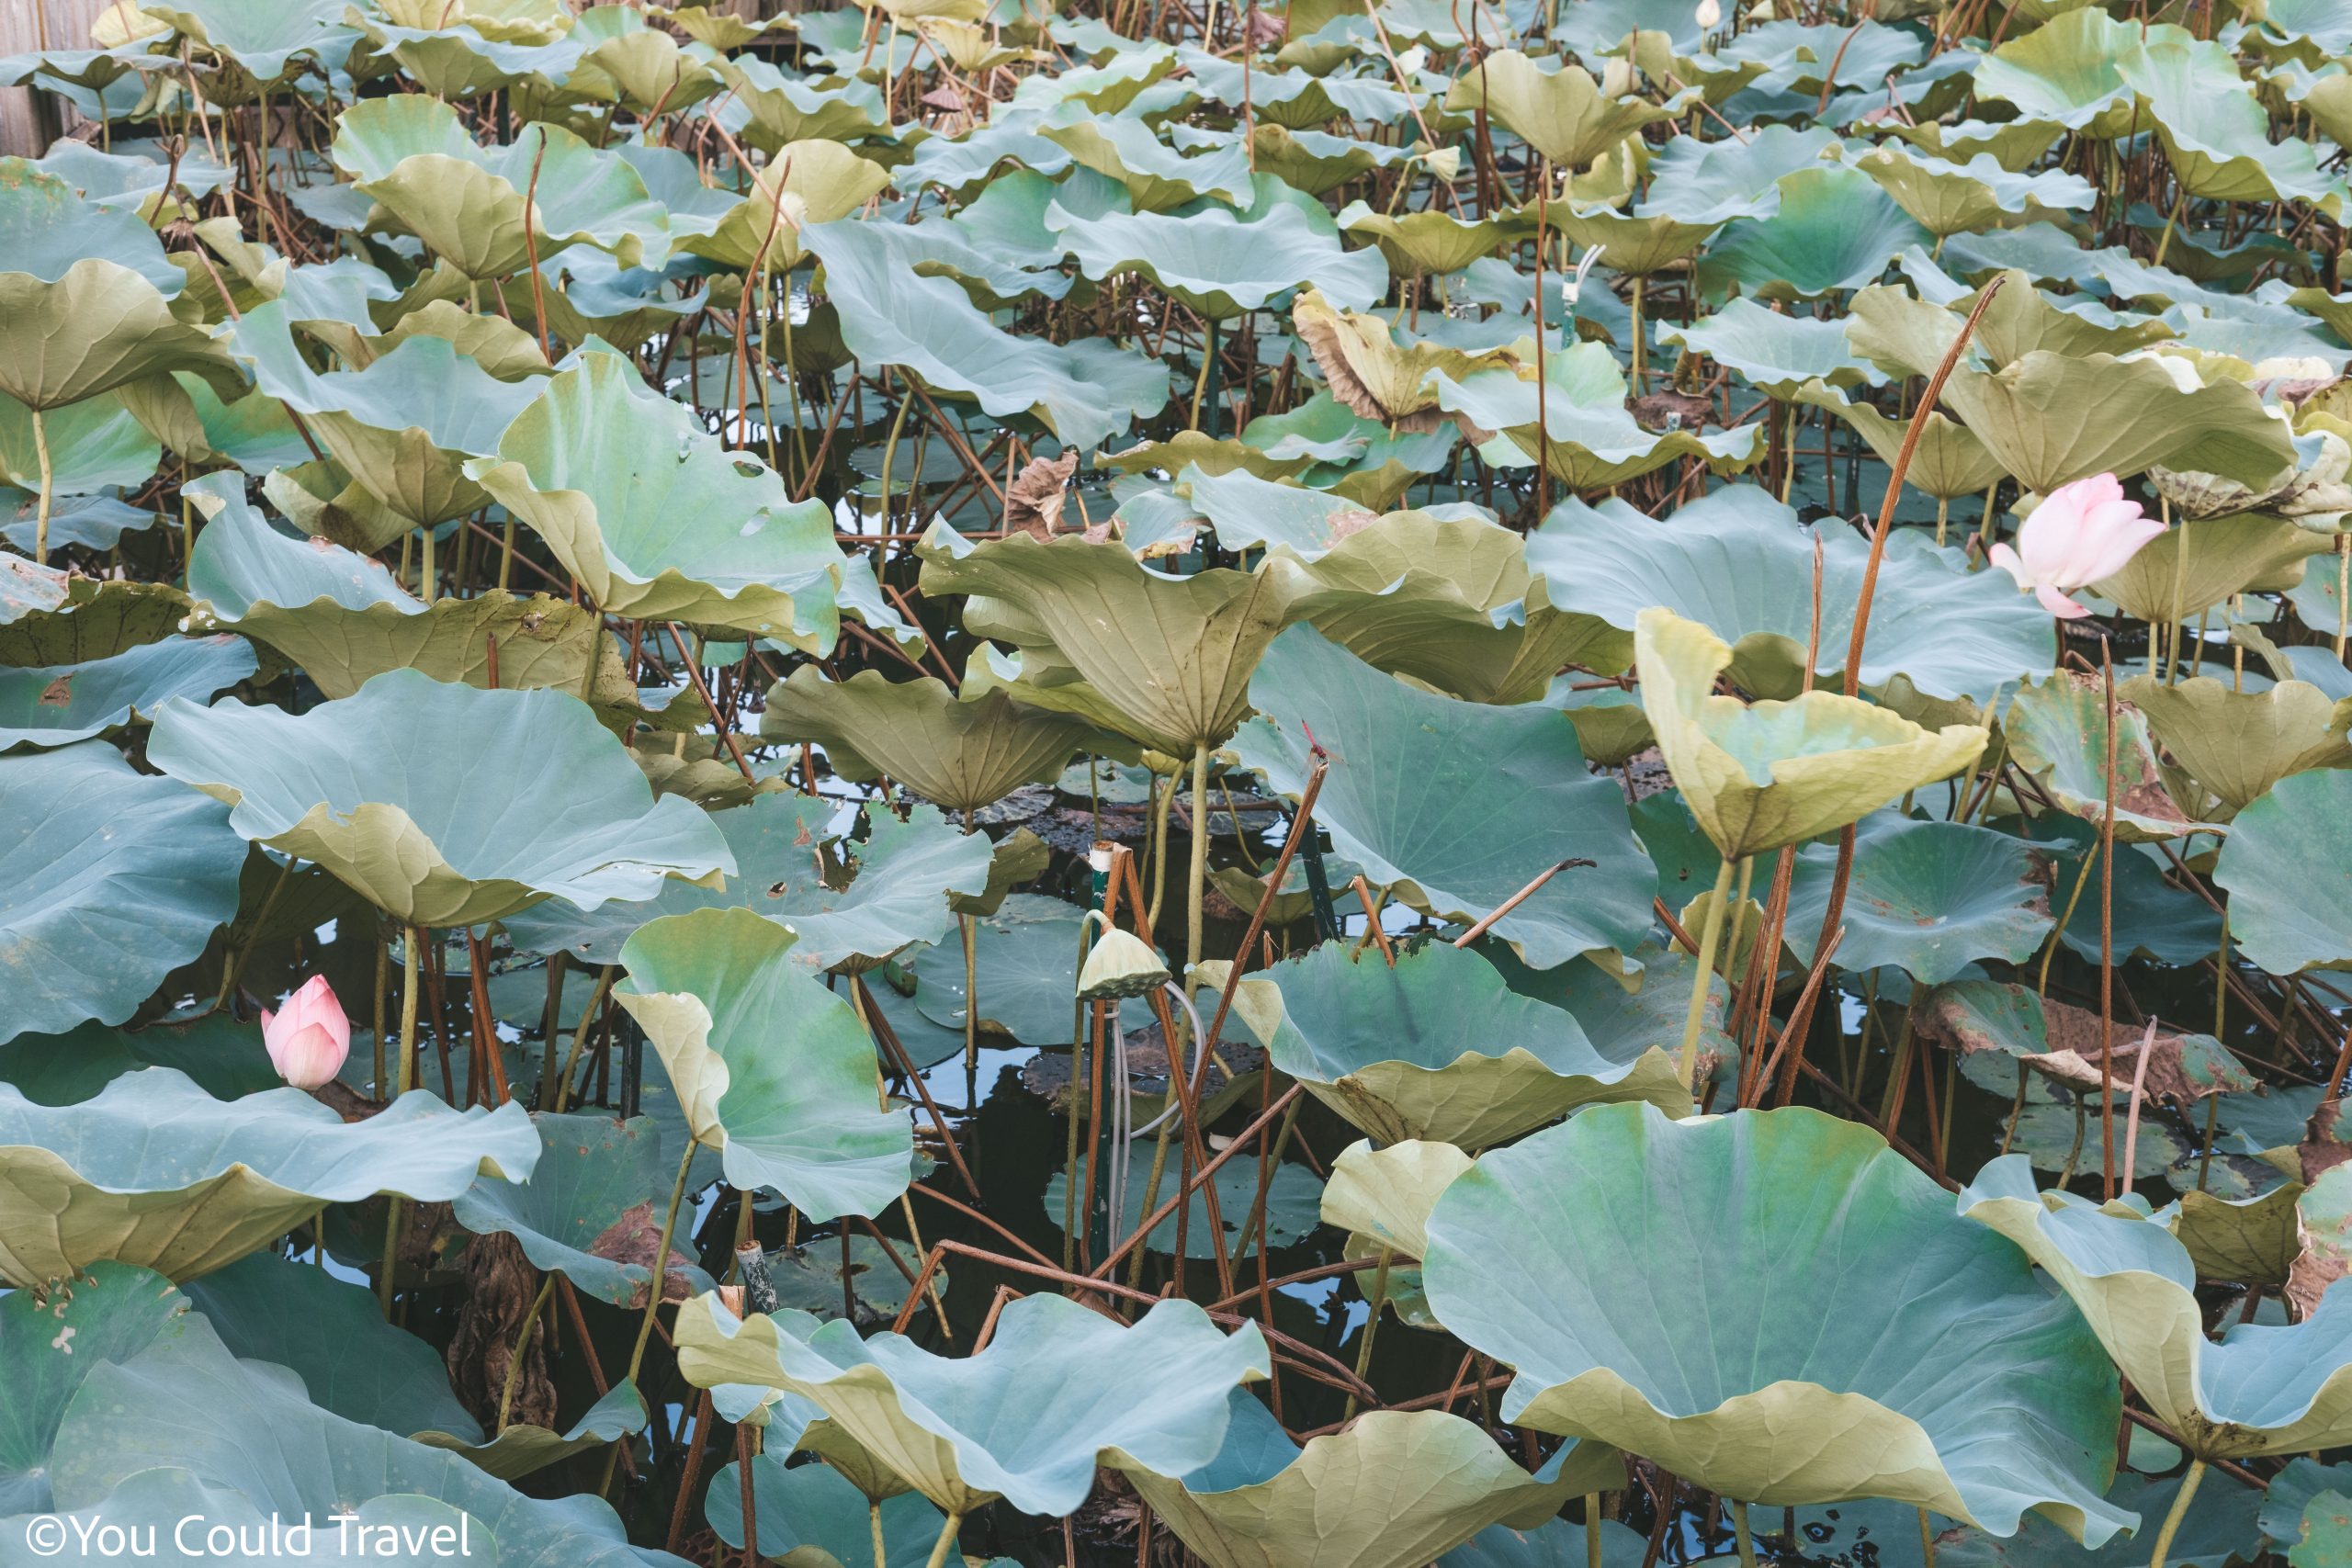 Lotus pond at Okinawa southeast botanical gardens